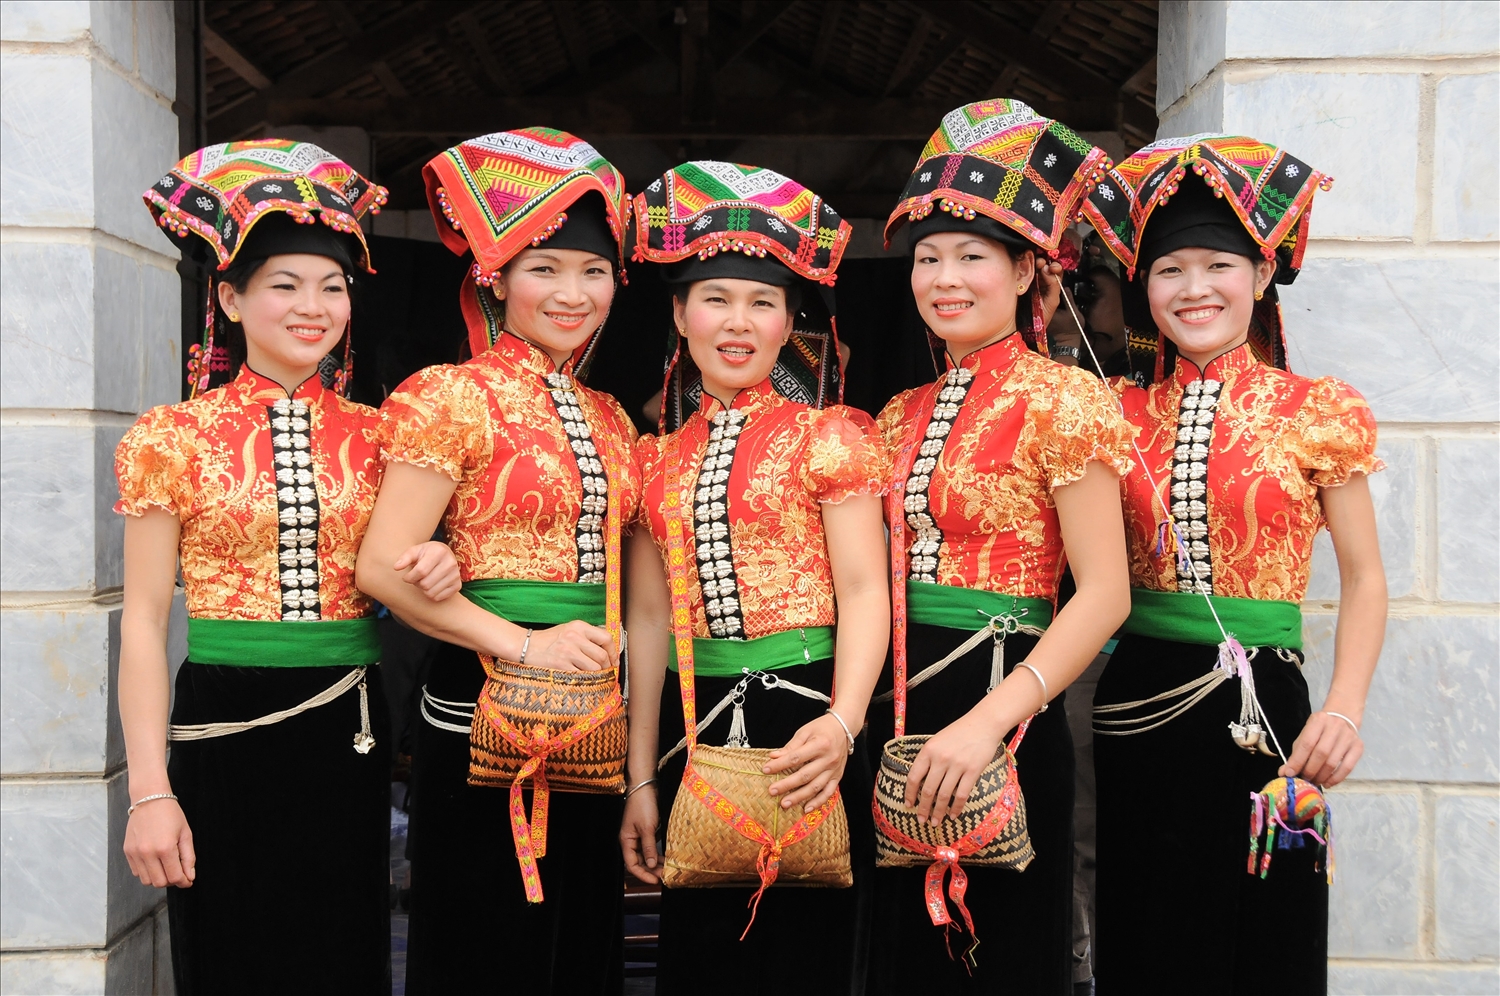 Nét đẹp truyền thống qua trang phục của người phụ nữ dân tộc Thái